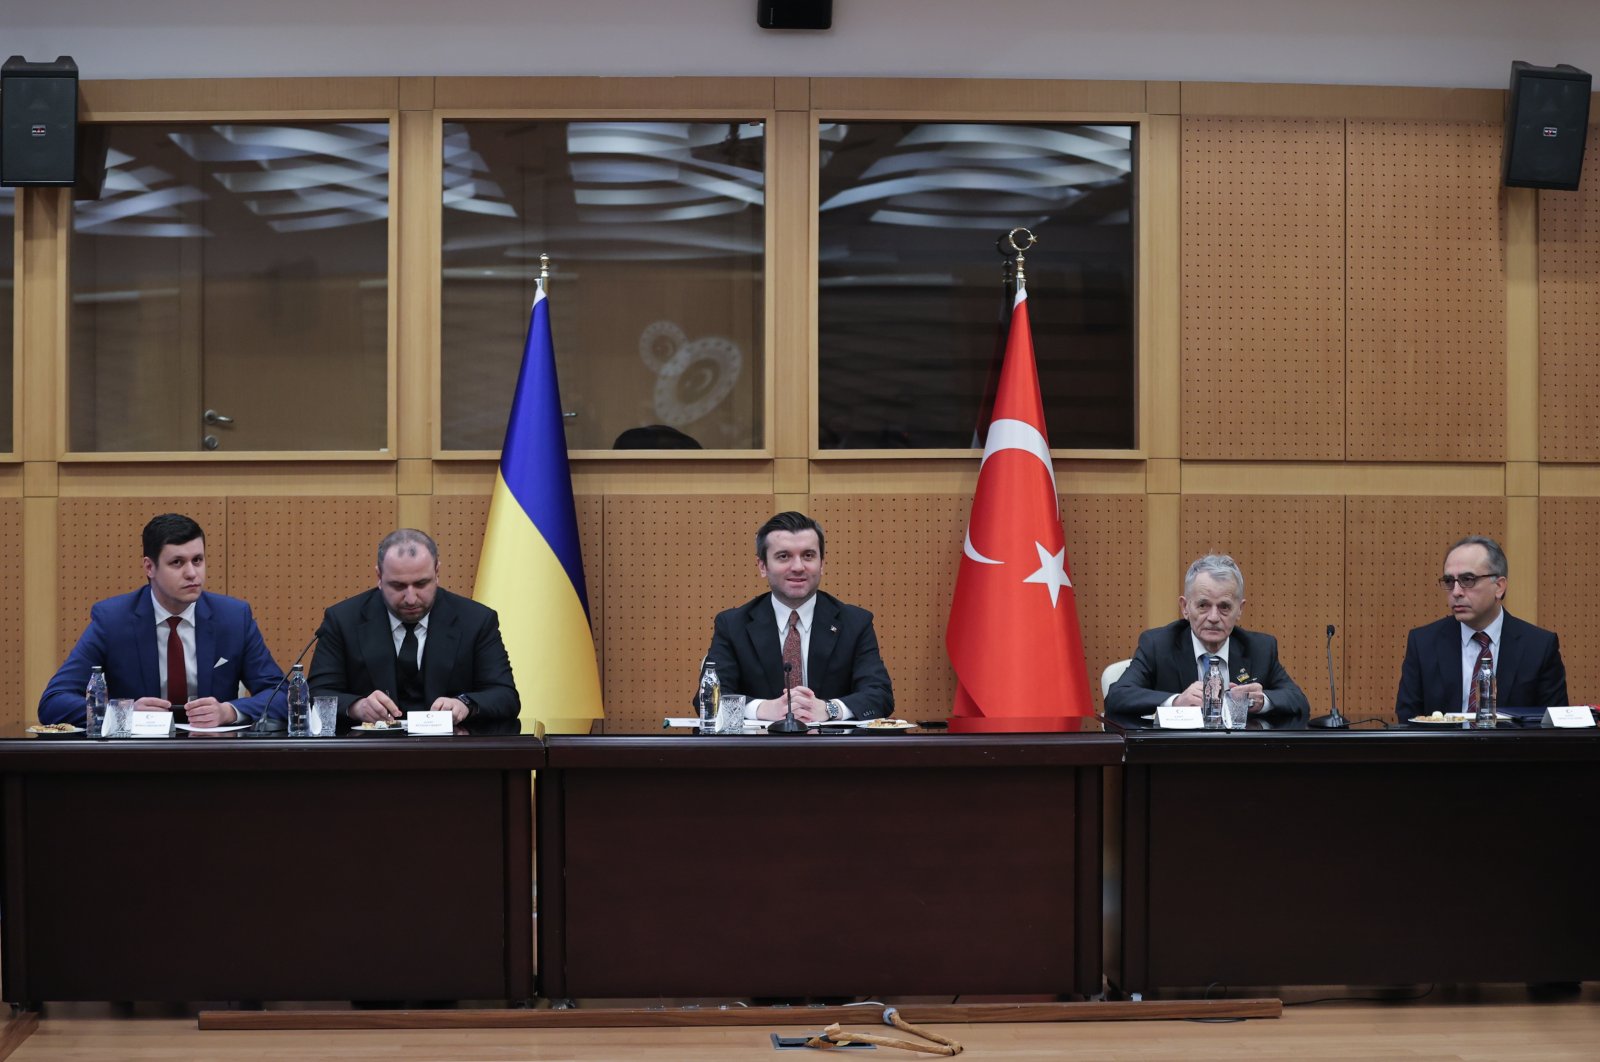 ‘Turki, Ukraina meningkatkan kemitraan strategis dengan diplomasi’